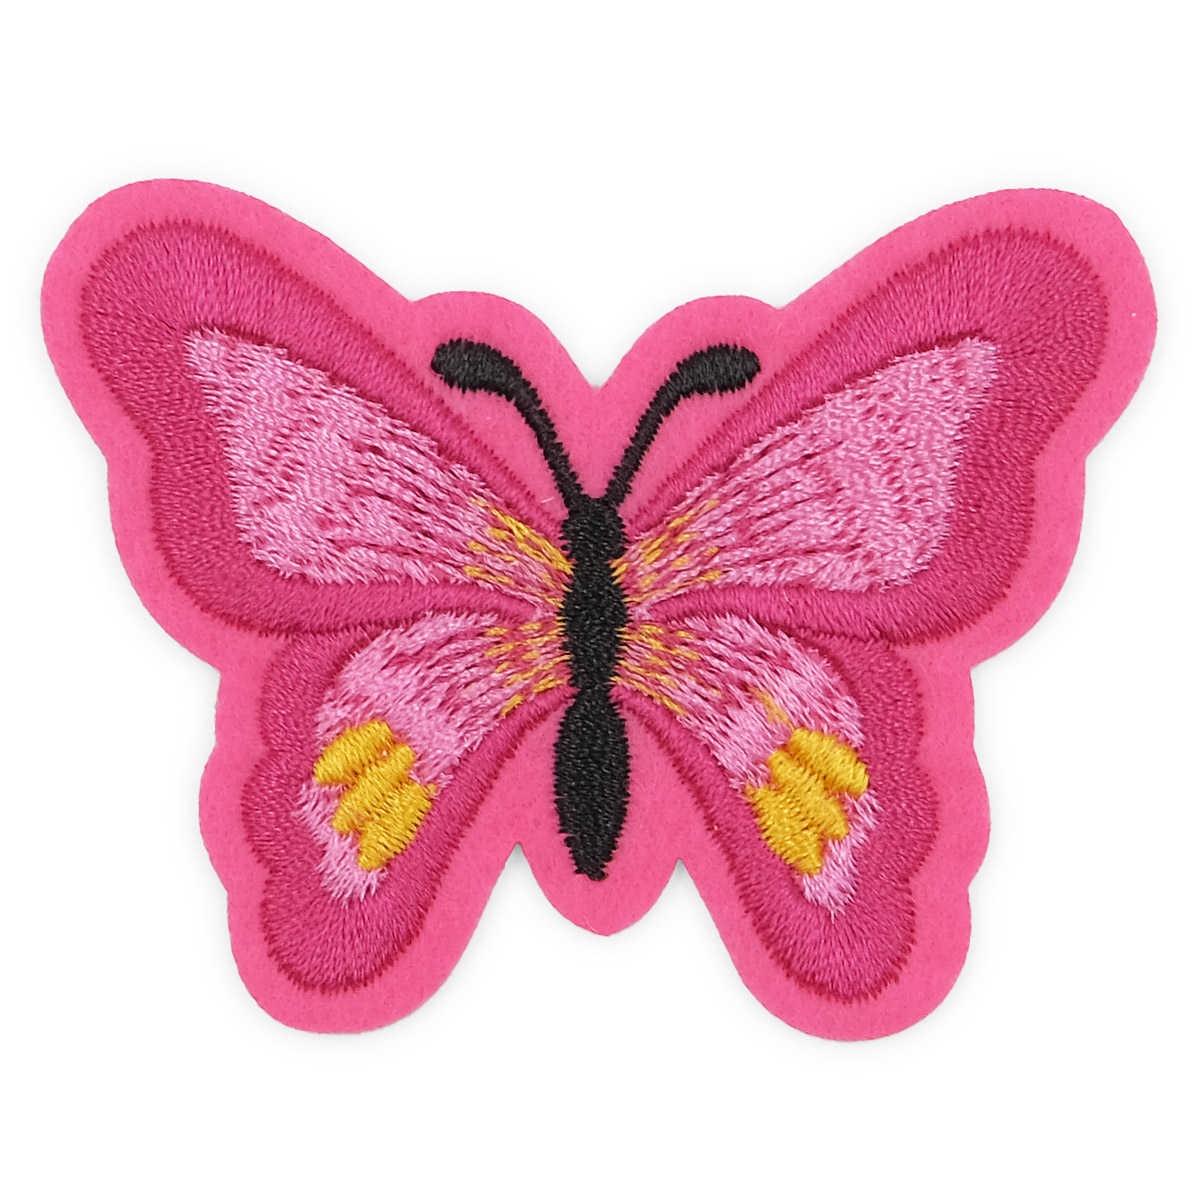 Термоаппликация Бабочка, 5,4*7см, Hobby&Pro (ярко-розовый)